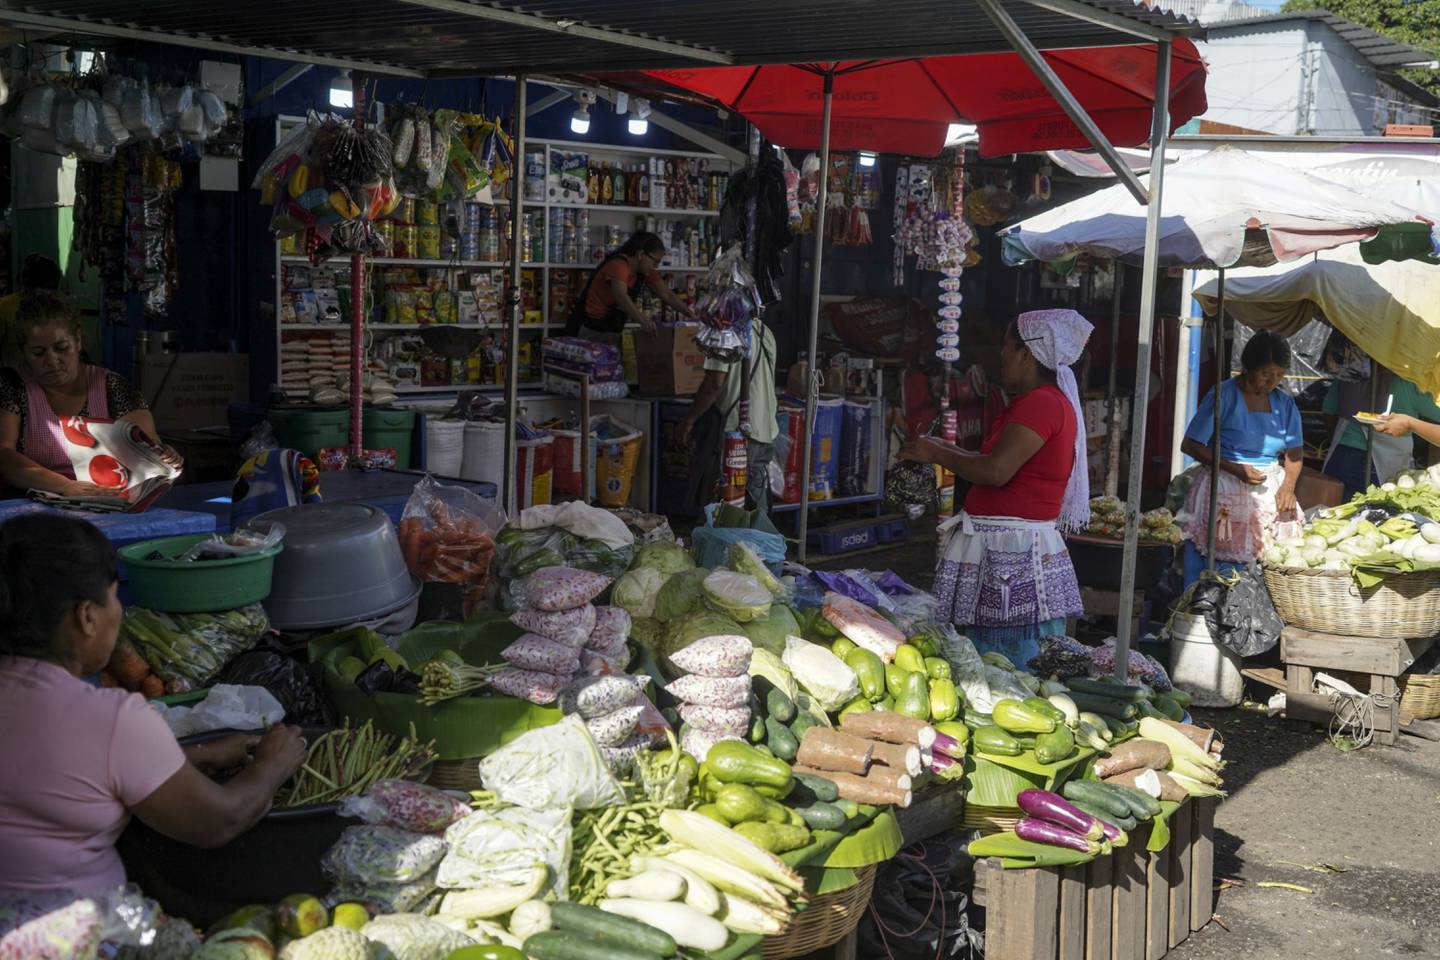 Vendors at a local market in San Salvador.